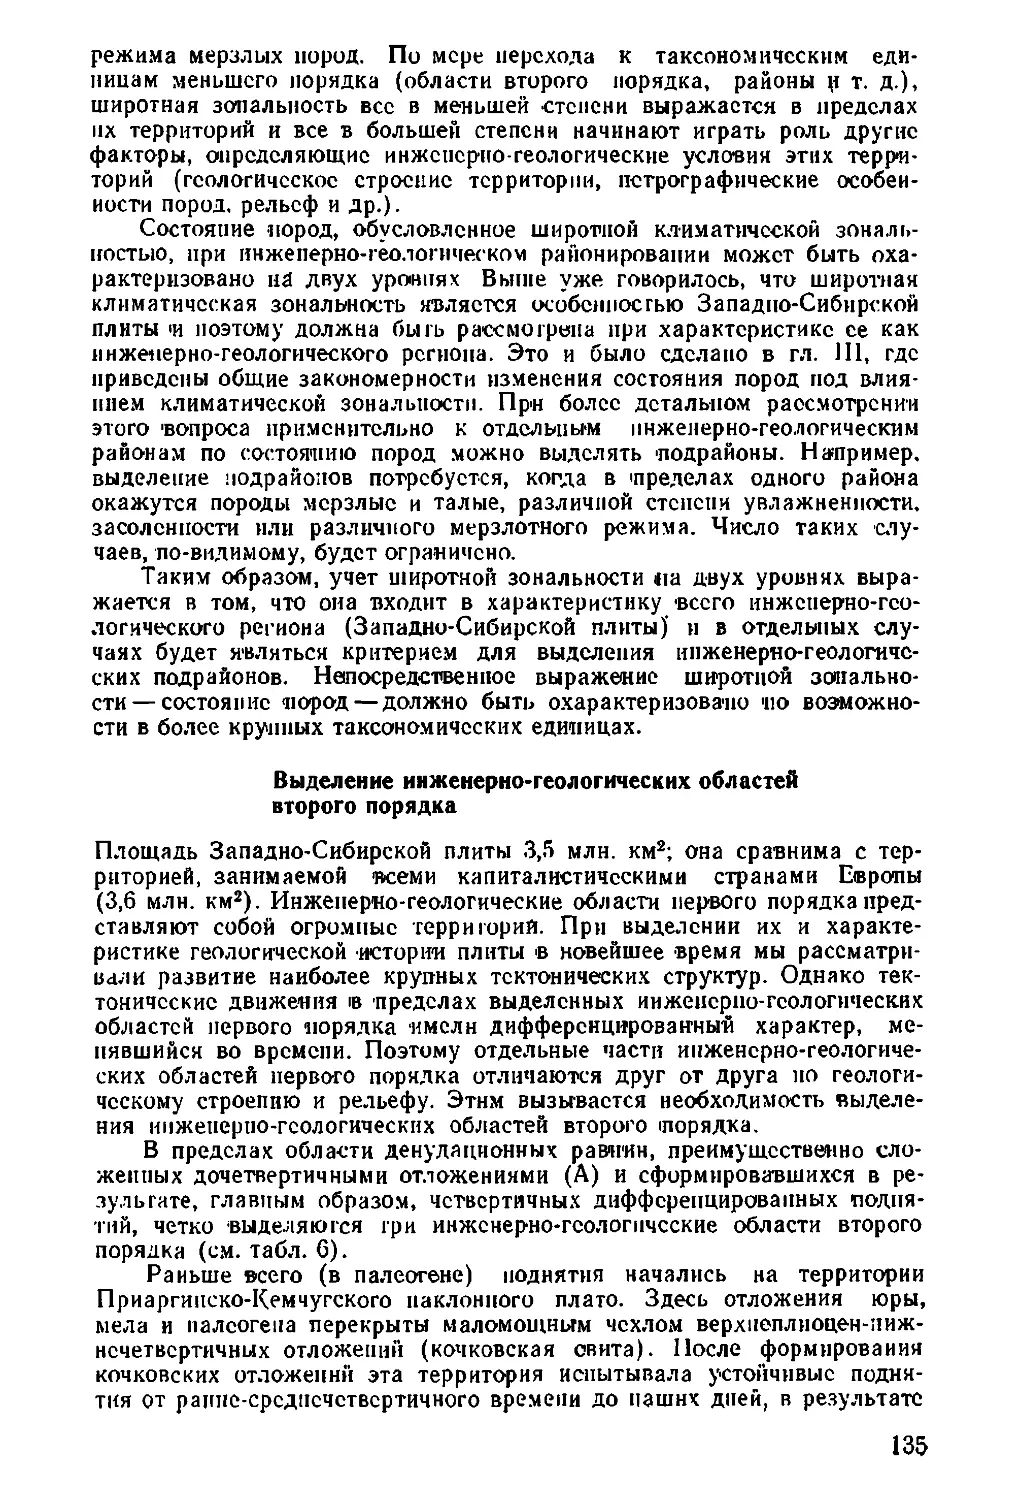 Выделение инженерно-геологических областей второго порядка. Сергеев Е.М., 135